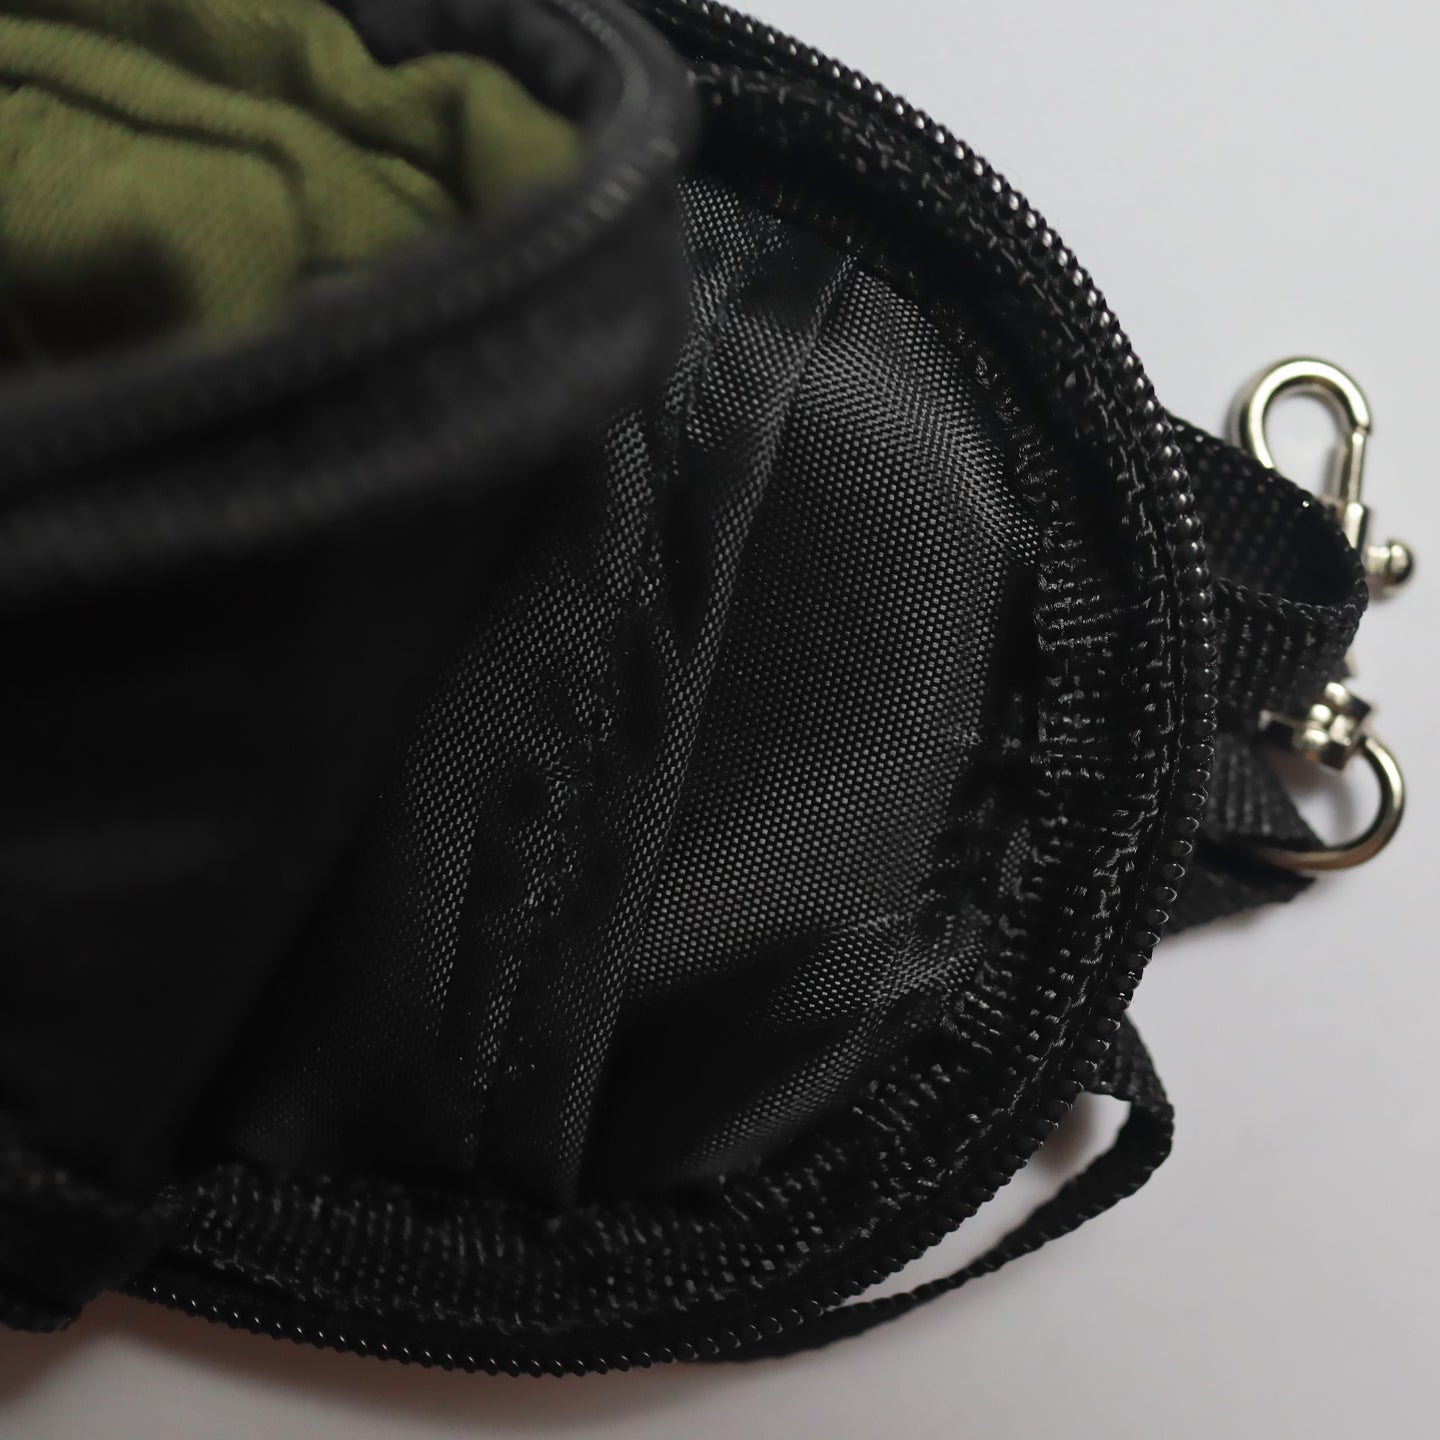 Miniature Backpack Green